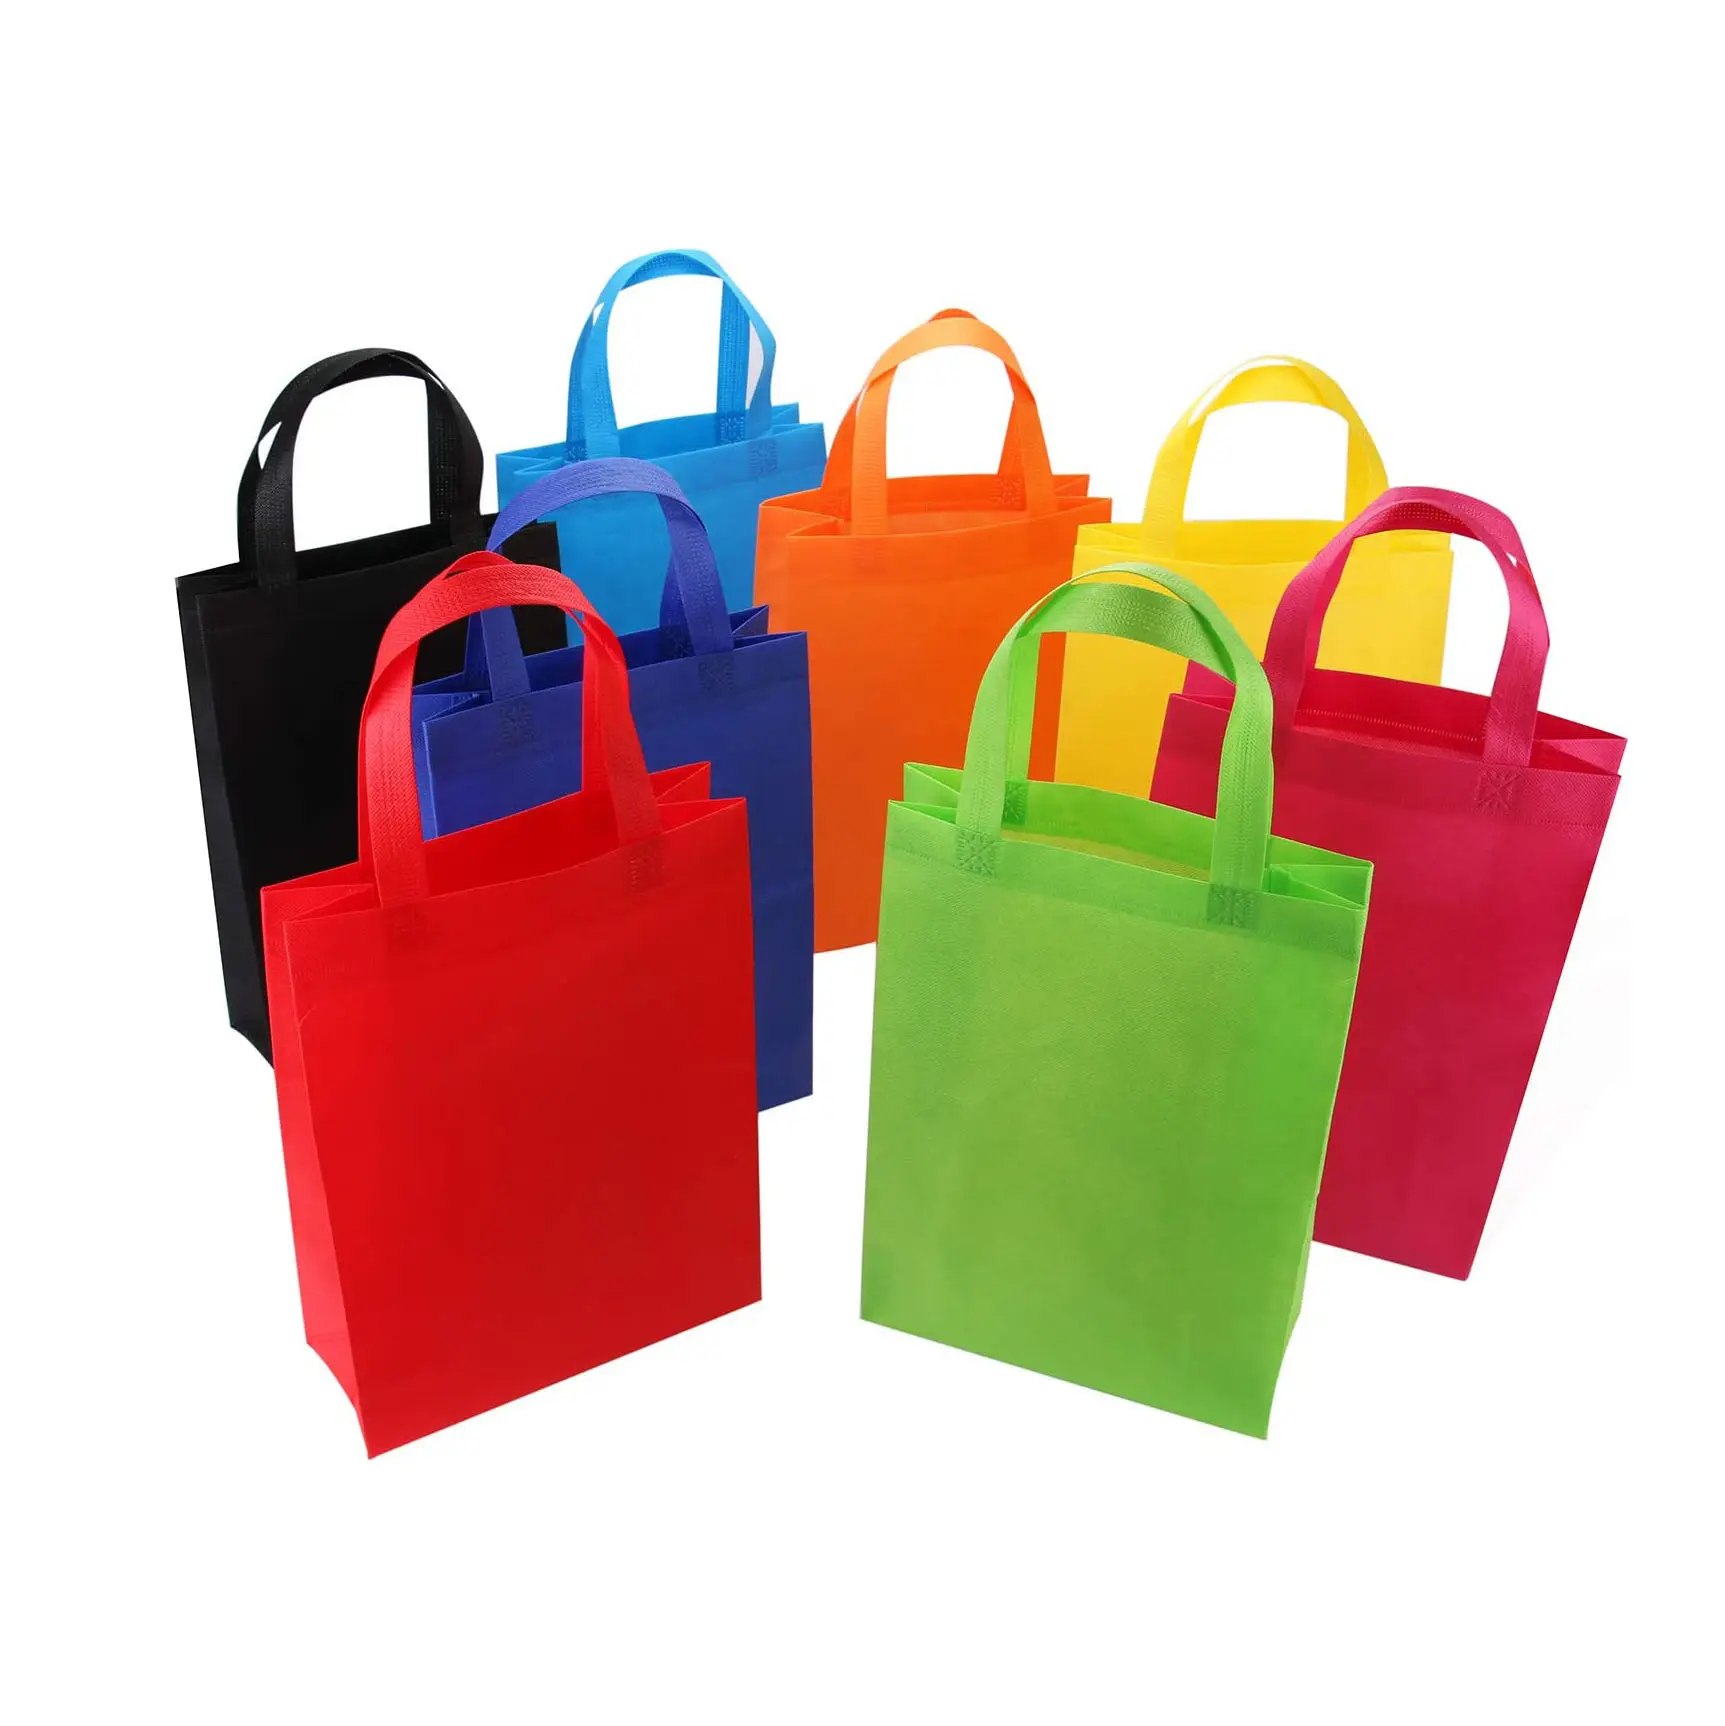 أقوى العروض حقيبة قماش متينة تُستخدم لتقديم الهدايا والحفلات كما أنها محمولة باليد وتتراوح المقاسات بين 35×25×10 سم وهي حقيبة سترة غير منسوجة من البولي بروبلين تستخدم في التسوق والسوبر ماركت